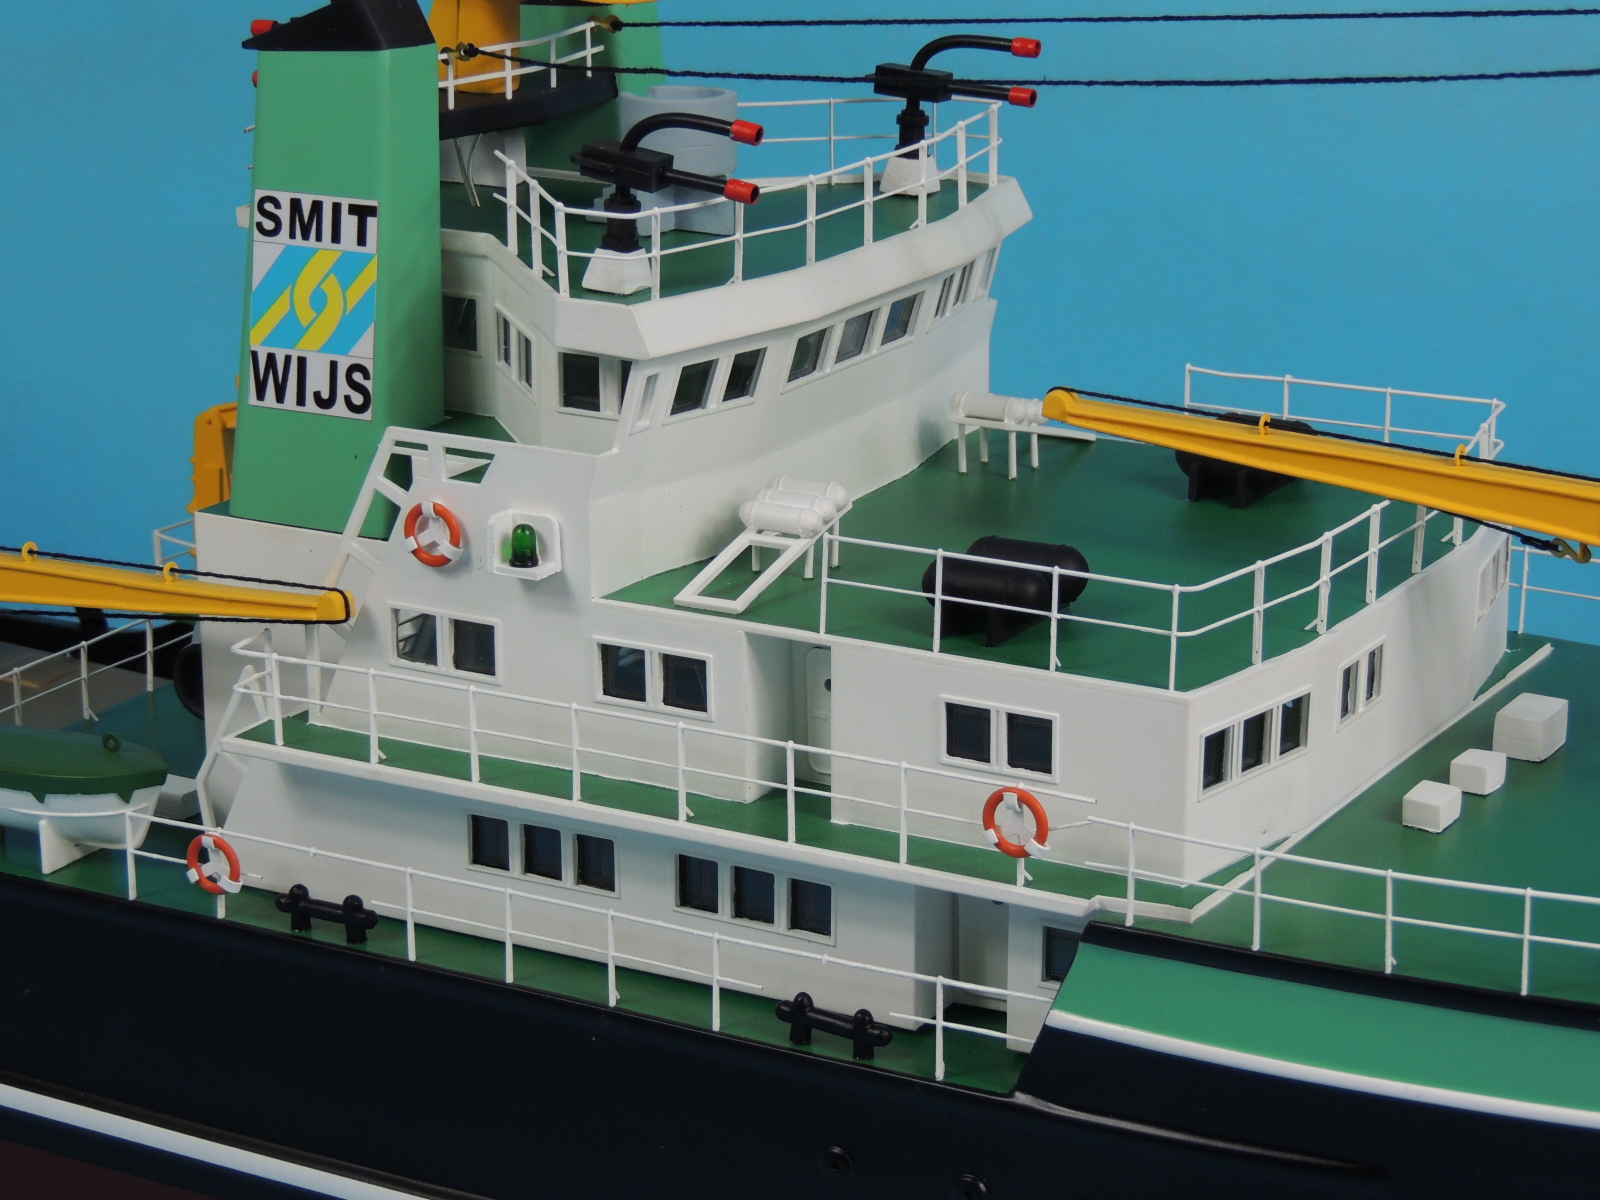 鹿特丹拖船 鹿特丹号拖轮,拖船收费标准,鹿特丹班轮 作者:航者行天下 2991 